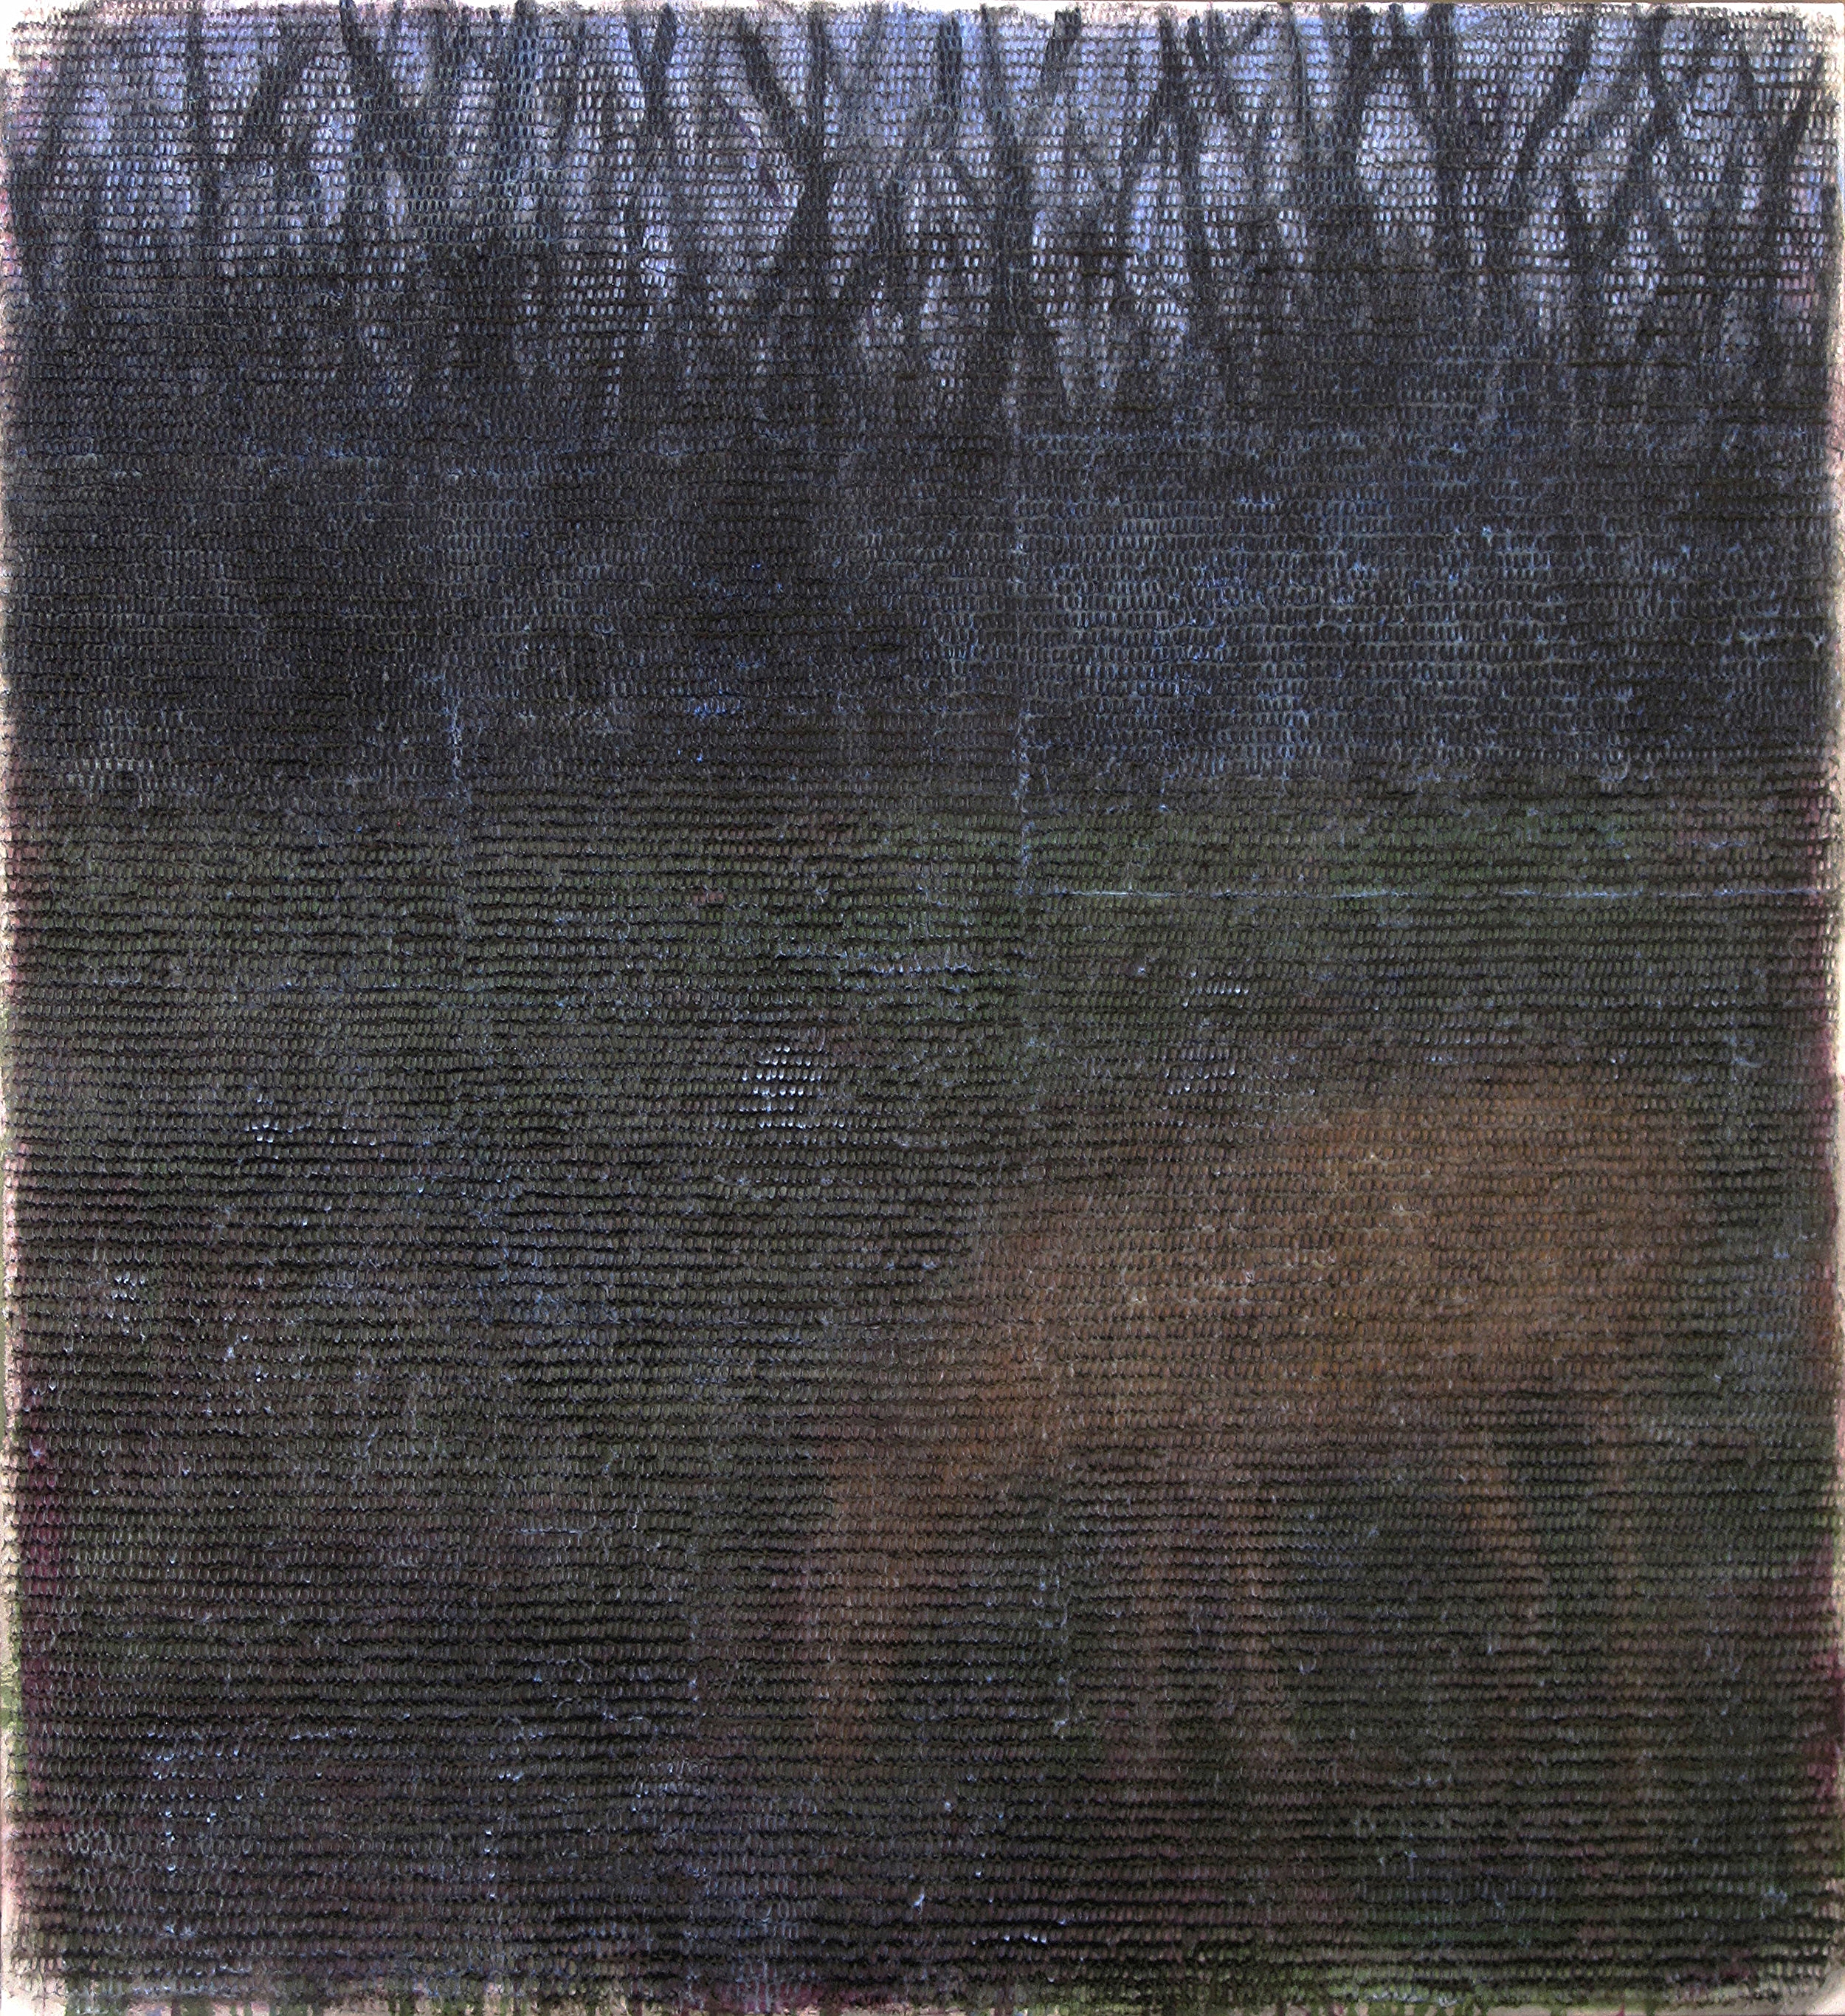 Deer in Twilight